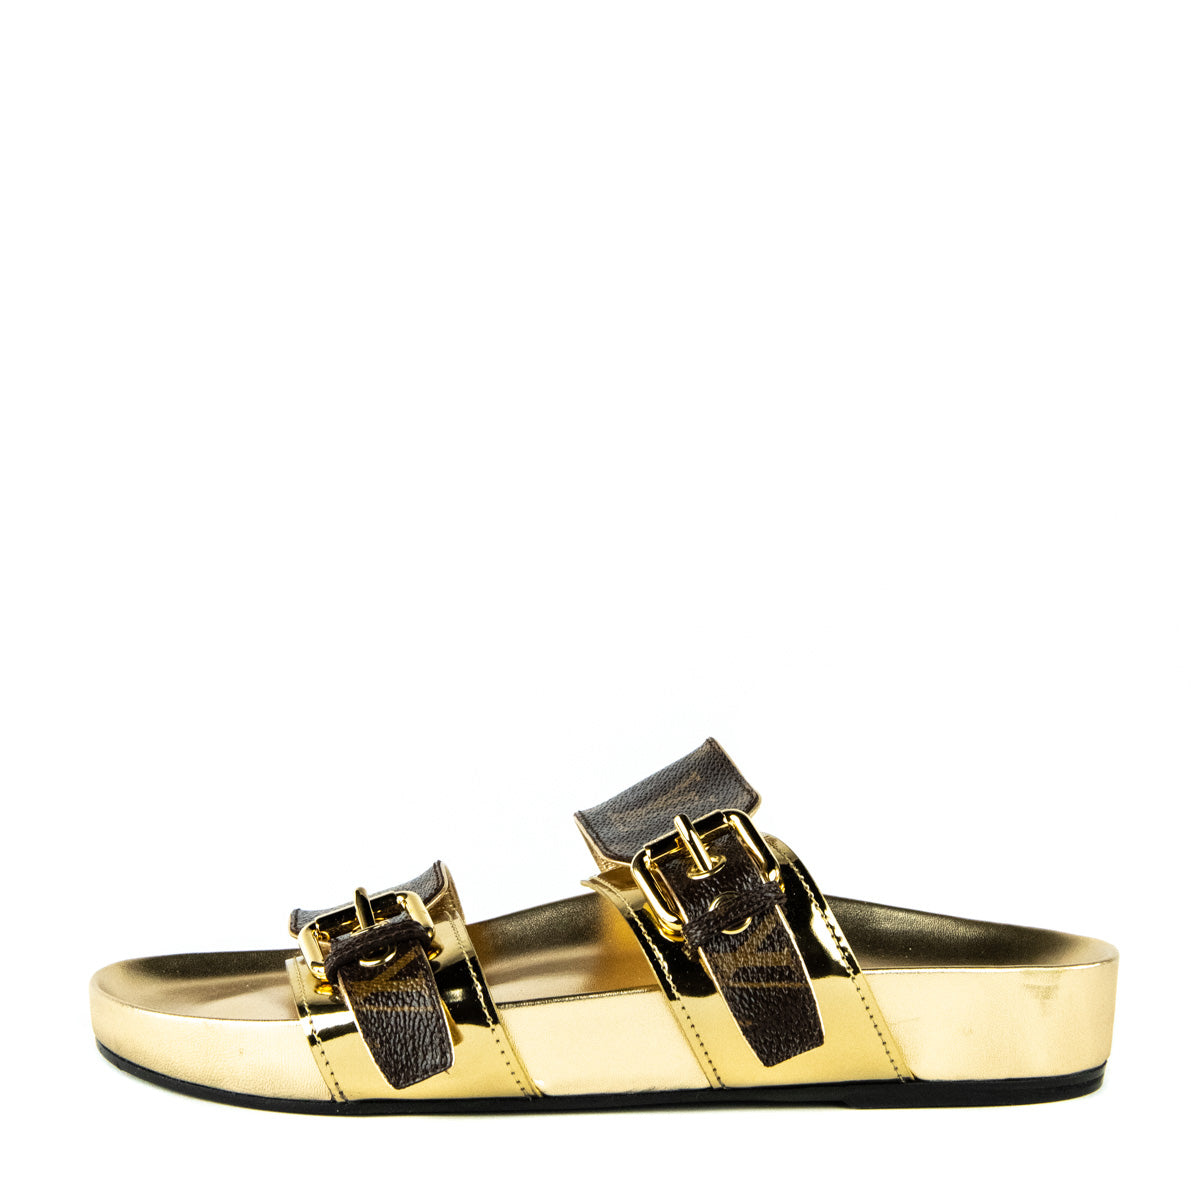 Louis Vuitton Monogram Canvas & Gold Bom Dia Sandals